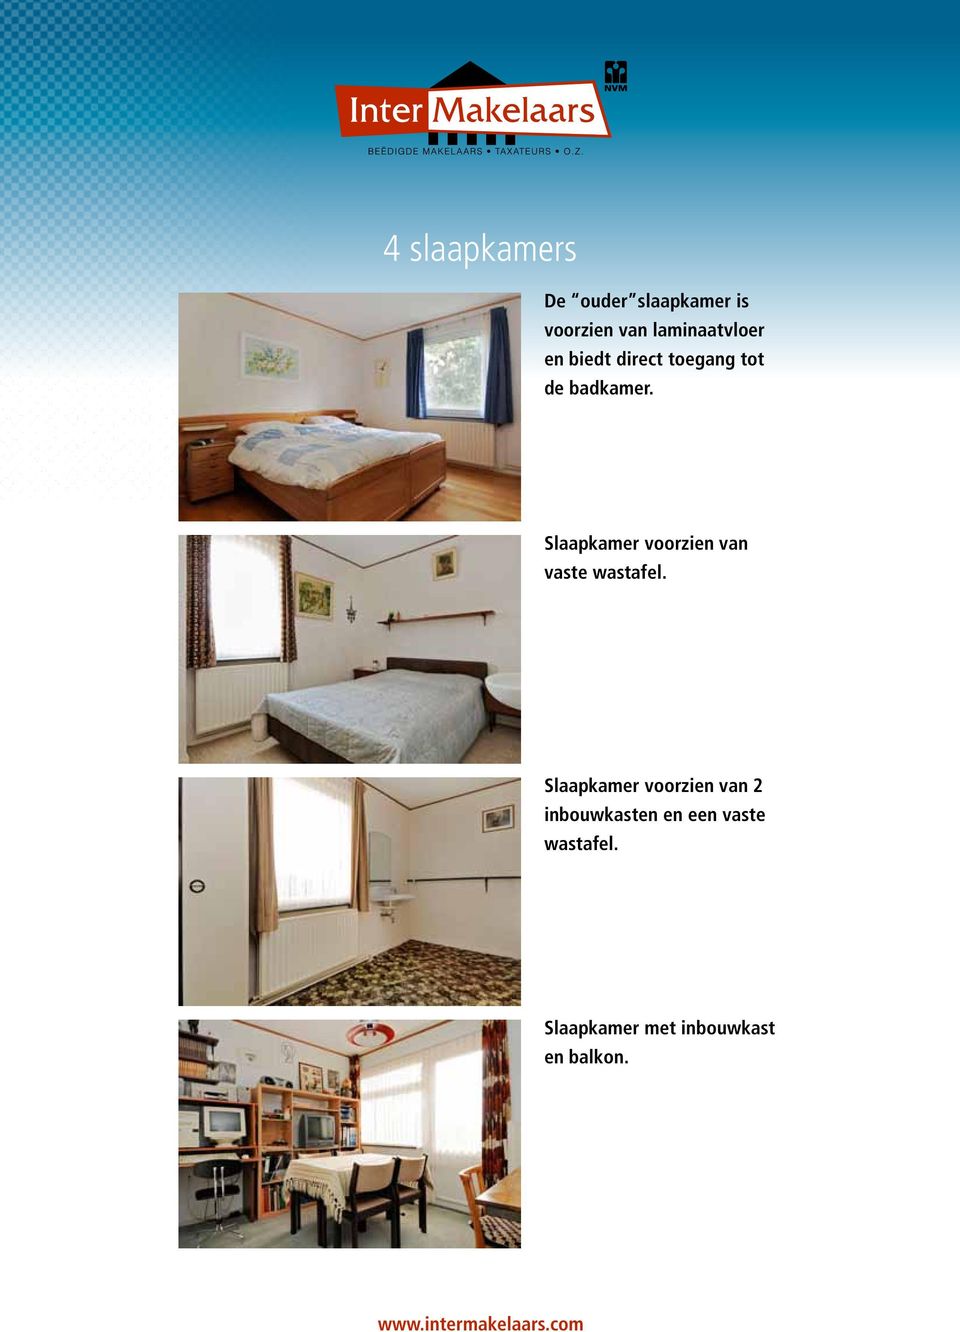 Slaapkamer voorzien van vaste wastafel.